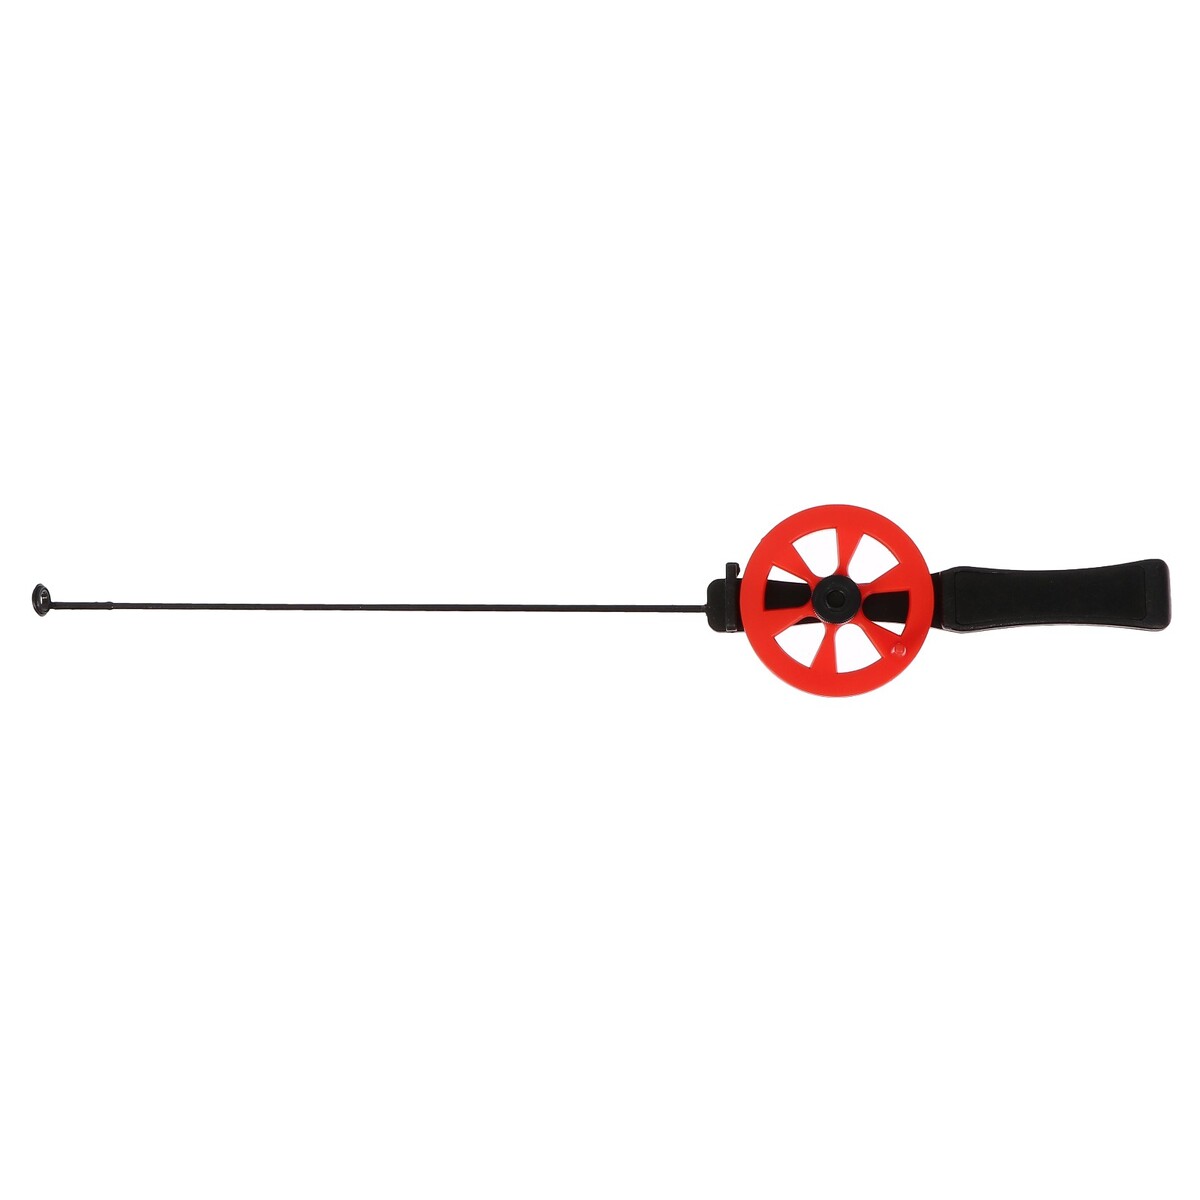 Удочка зимняя, ручка пластик, направляющая лески, красная, hfb-15 катушка инерционная металл пластик диаметр 5 см направляющая лески черно оранжевый 601d